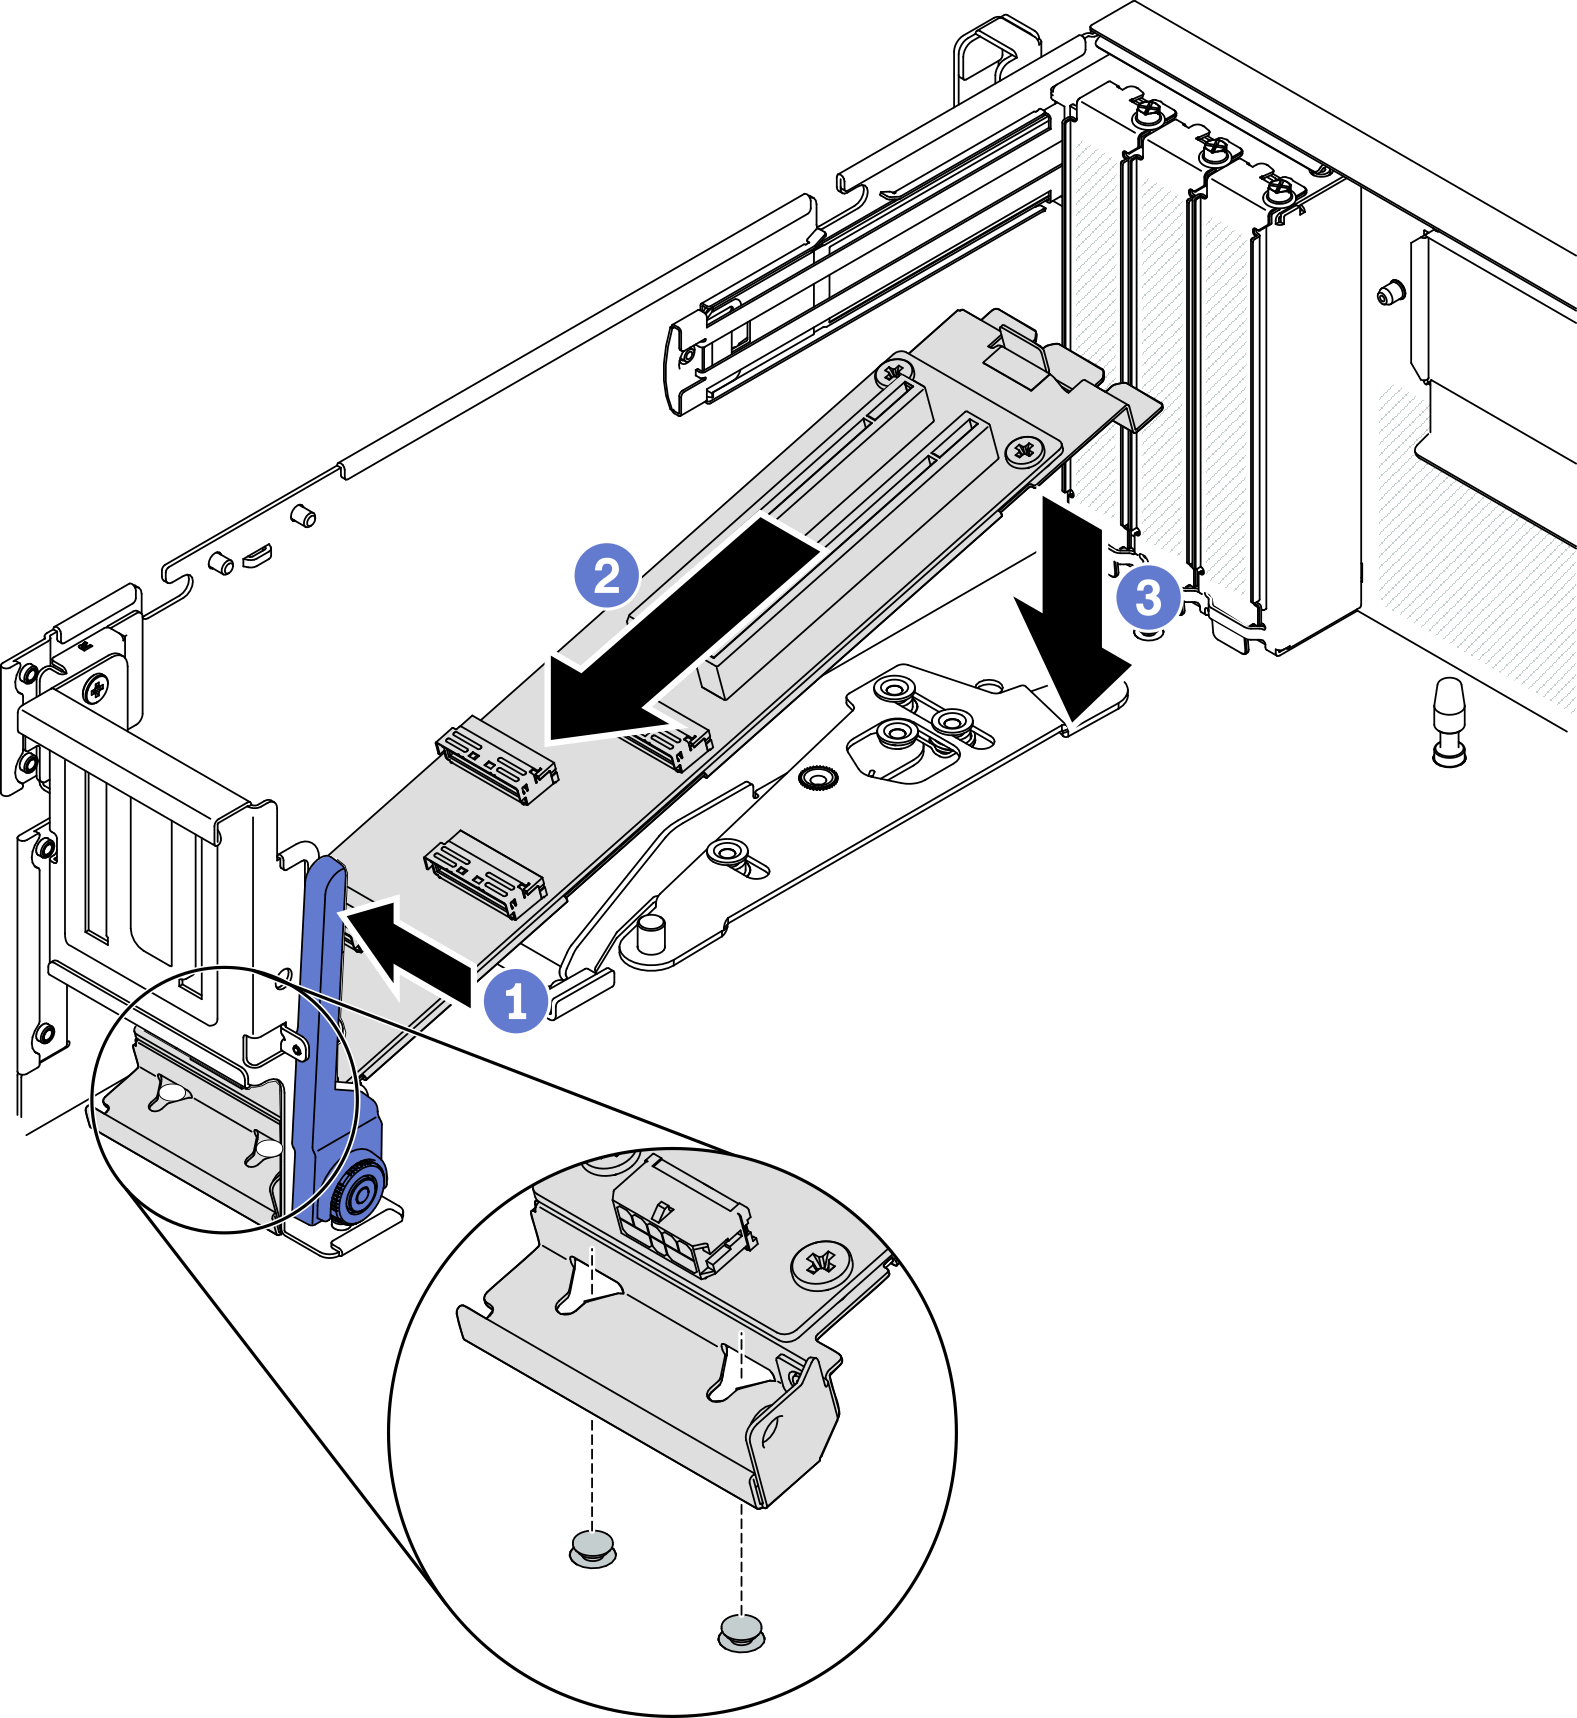 Placing the modulo della scheda di espansione I/O anteriore into the chassis